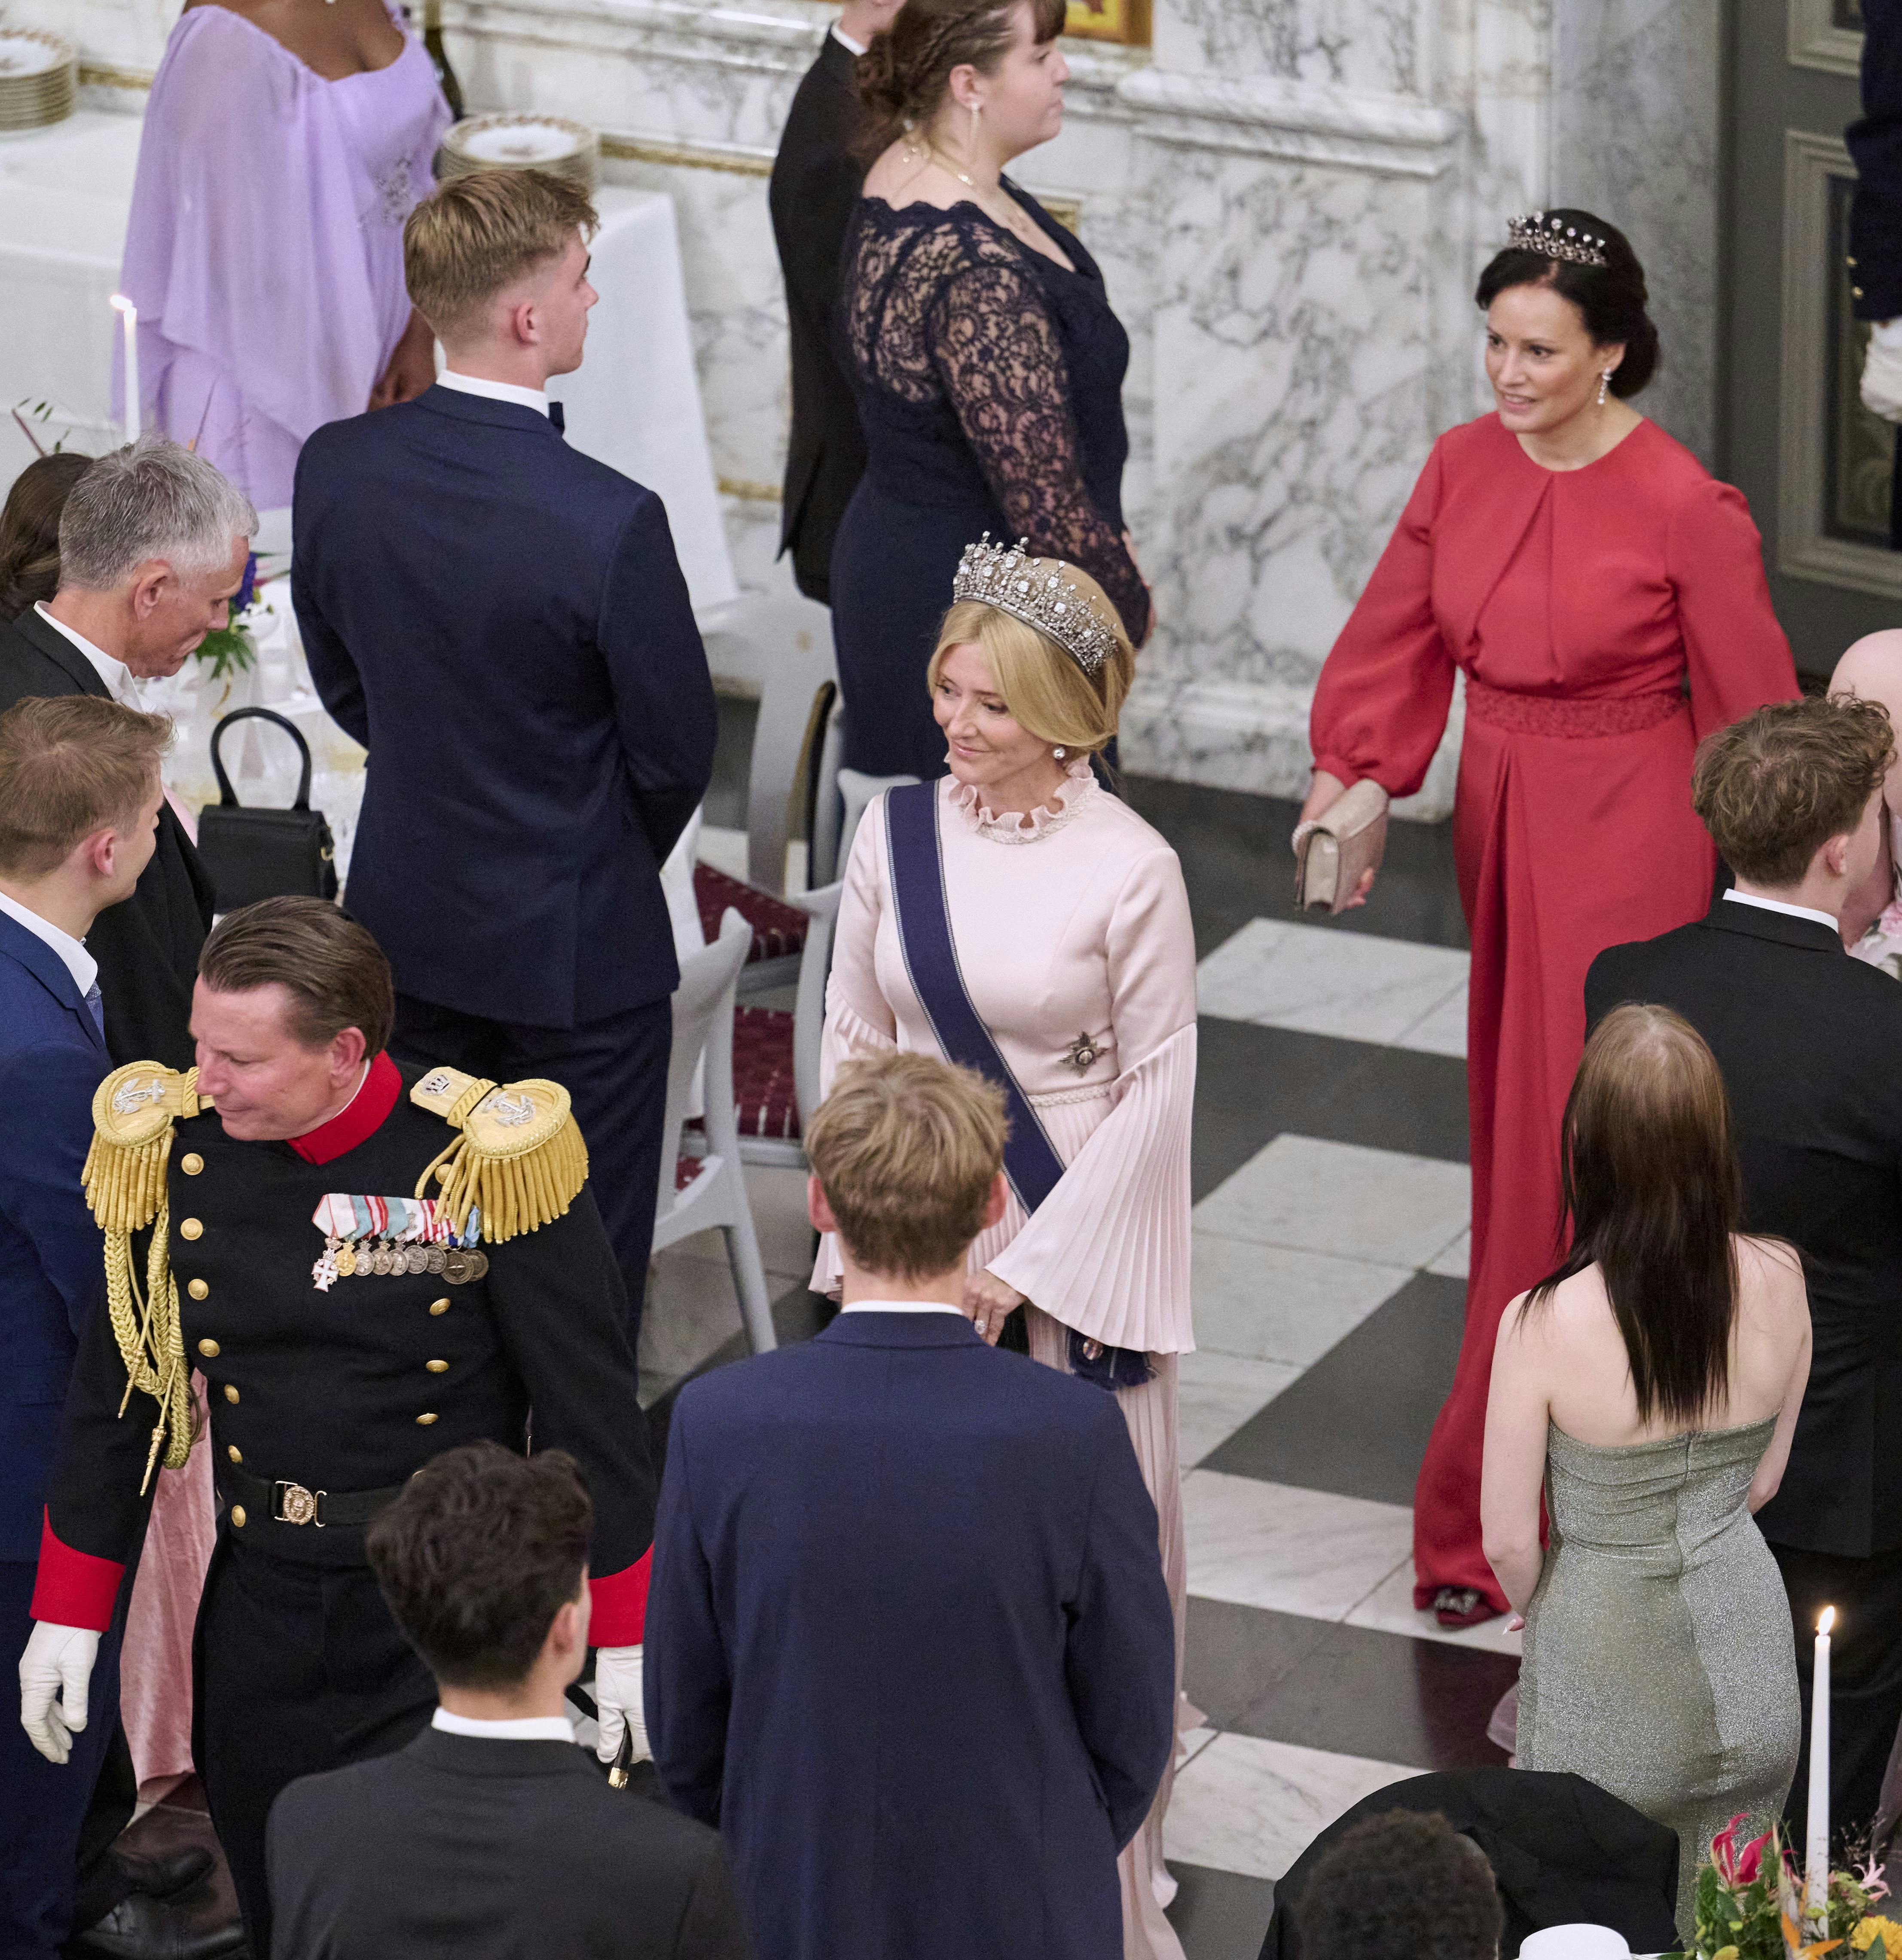 Her har kronprinsesse Marie-Chantal fået styr på ordenen "Order of Saints Olga and Sophia".